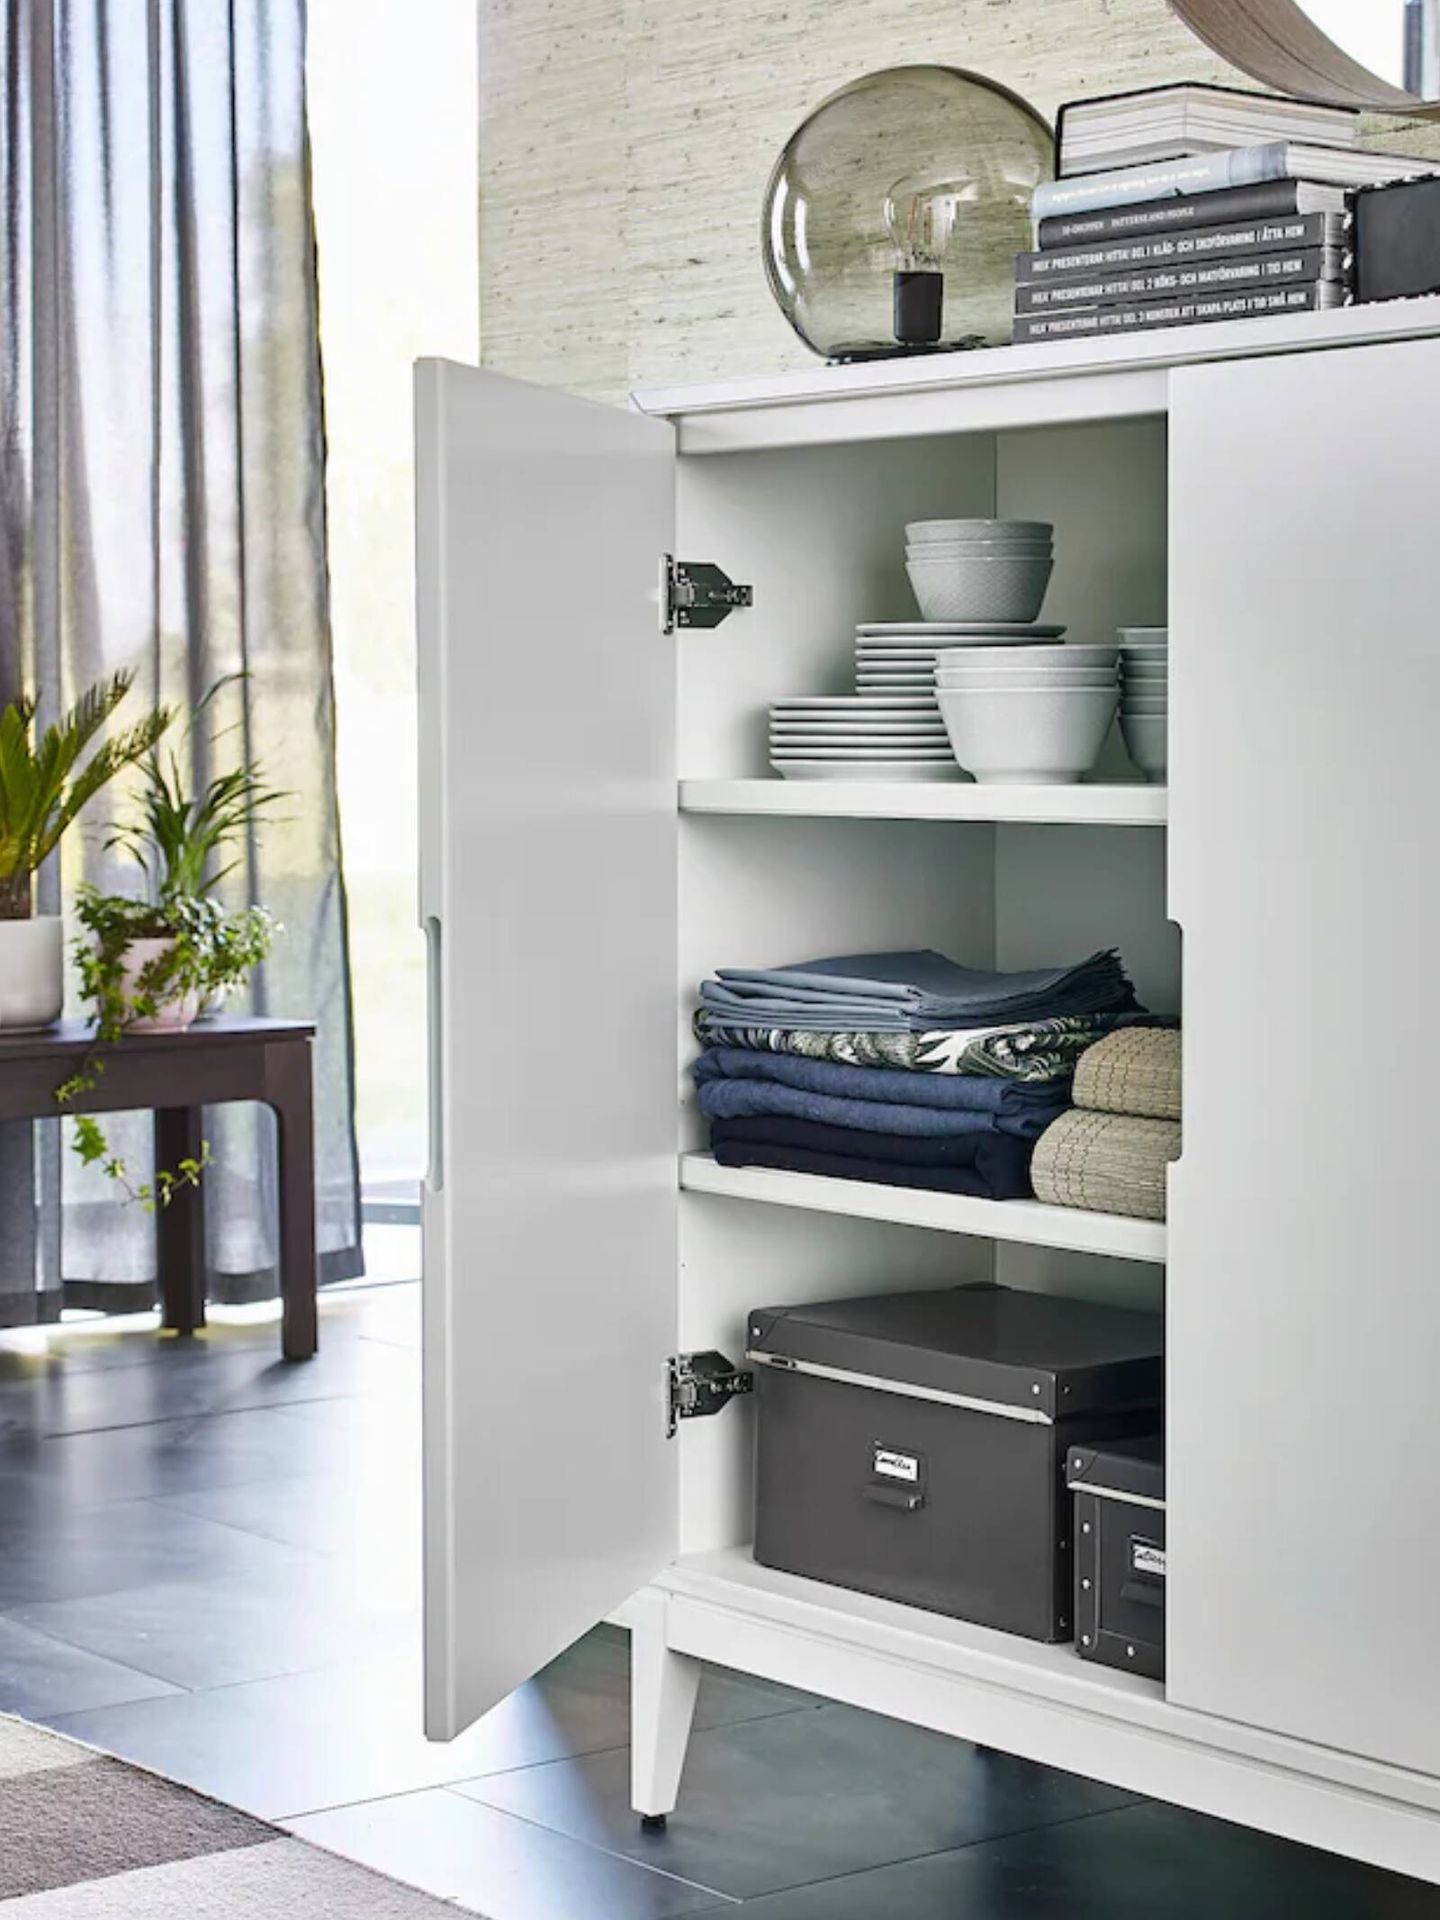 Descubre el mueble de Ikea ideal para casas coquetas. (Cortesía)